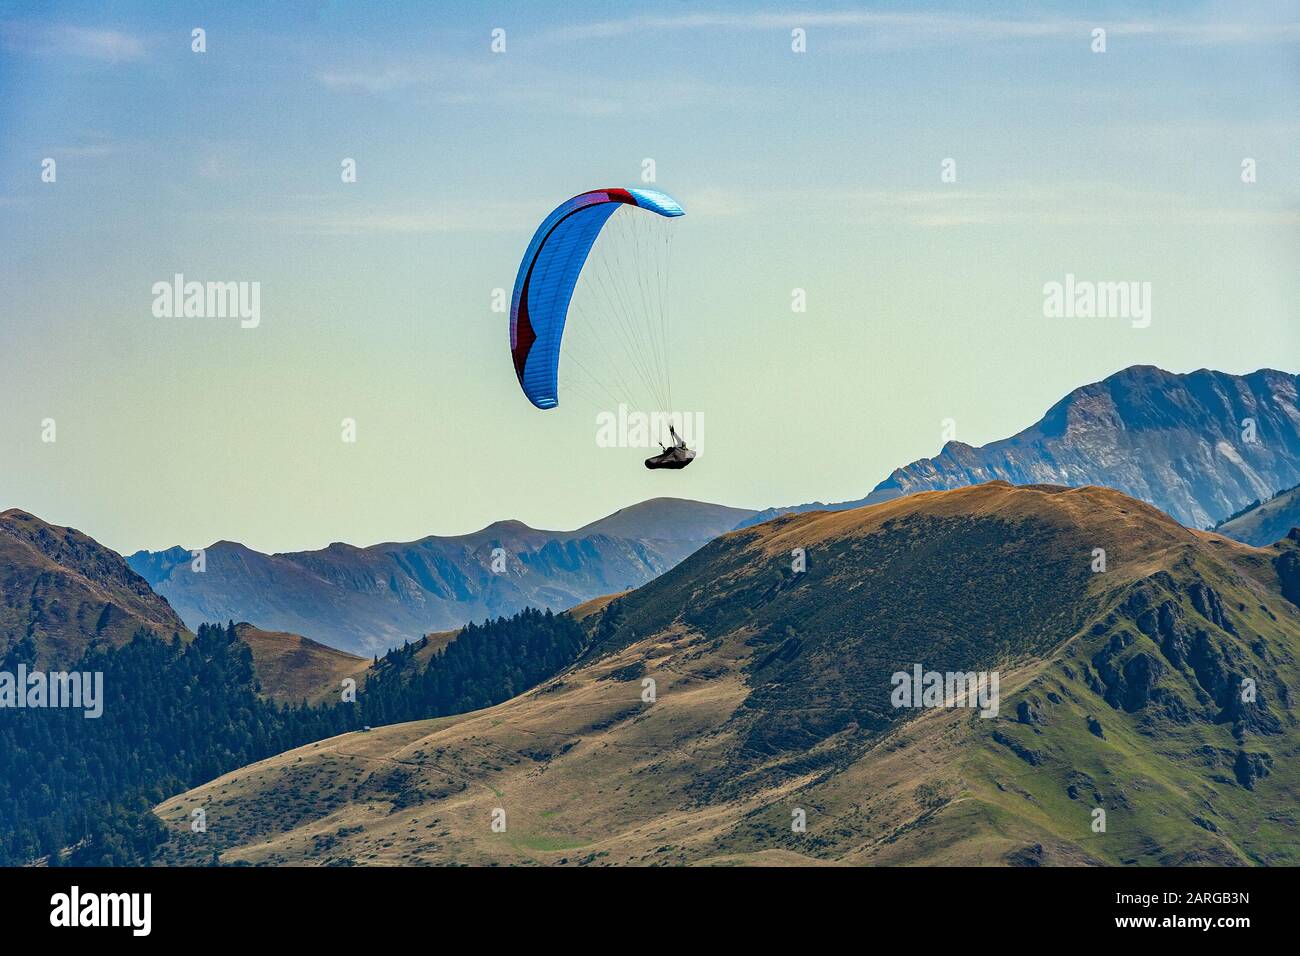 Parapente, sport extrême, vol au-dessus des Pyrénées du côté français. Station de ski de Luchon Superbagnères, France Banque D'Images